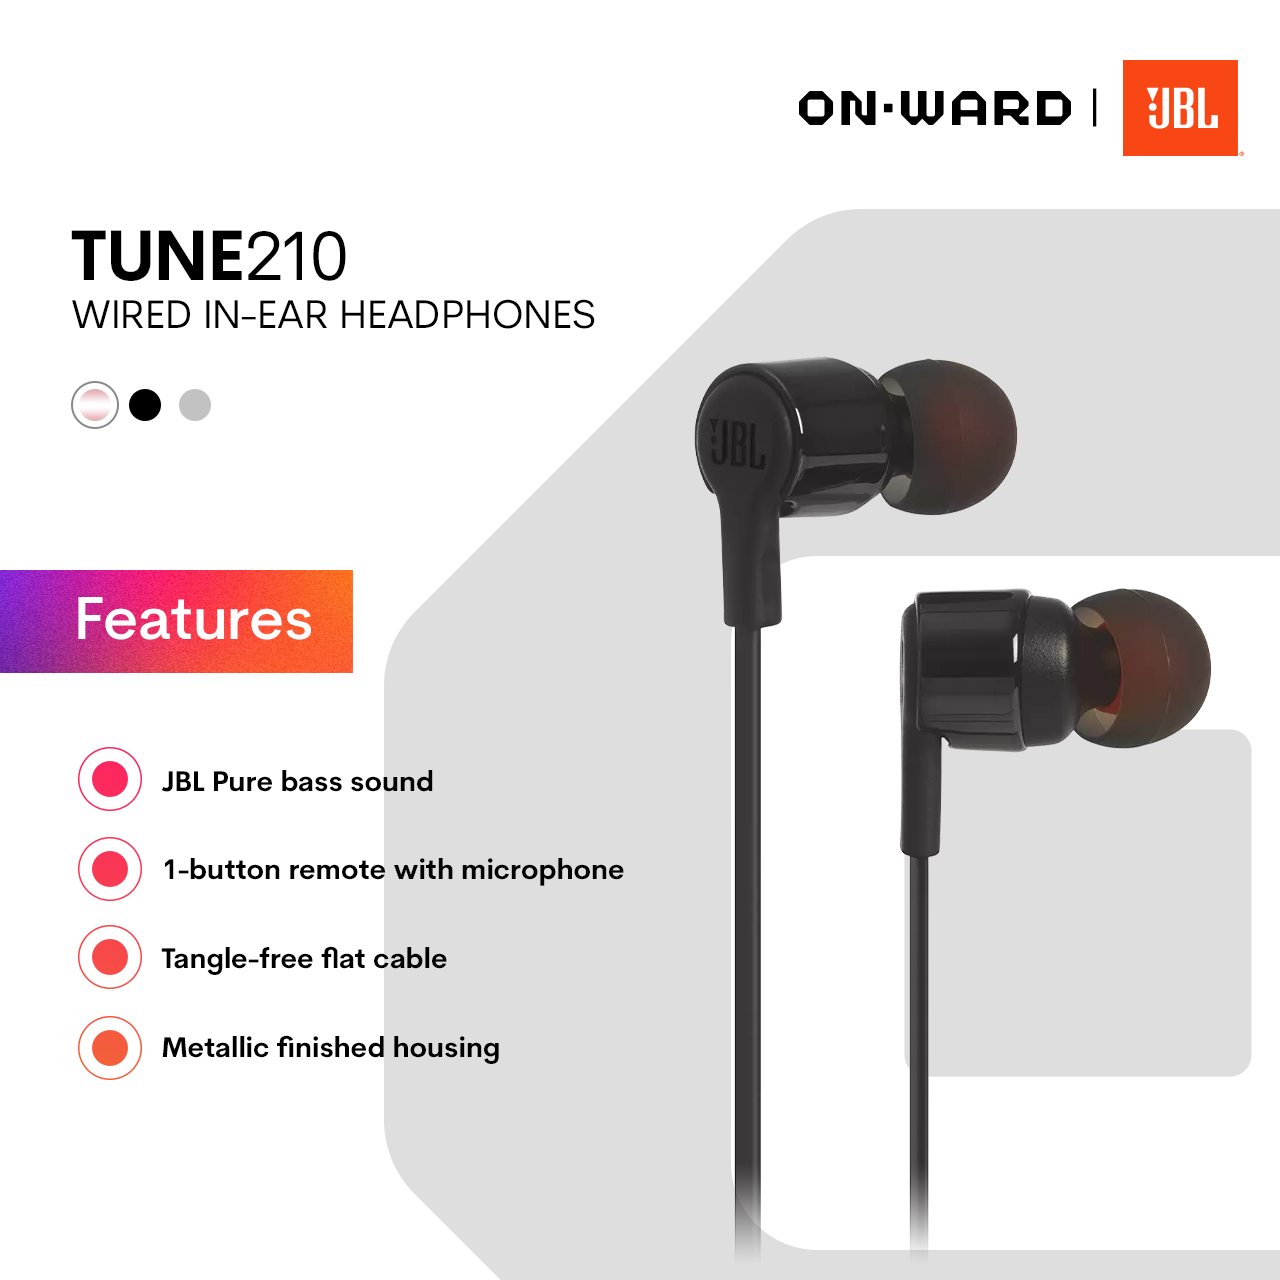 JBL Tune 210 | In-ear headphones - OnWard PH